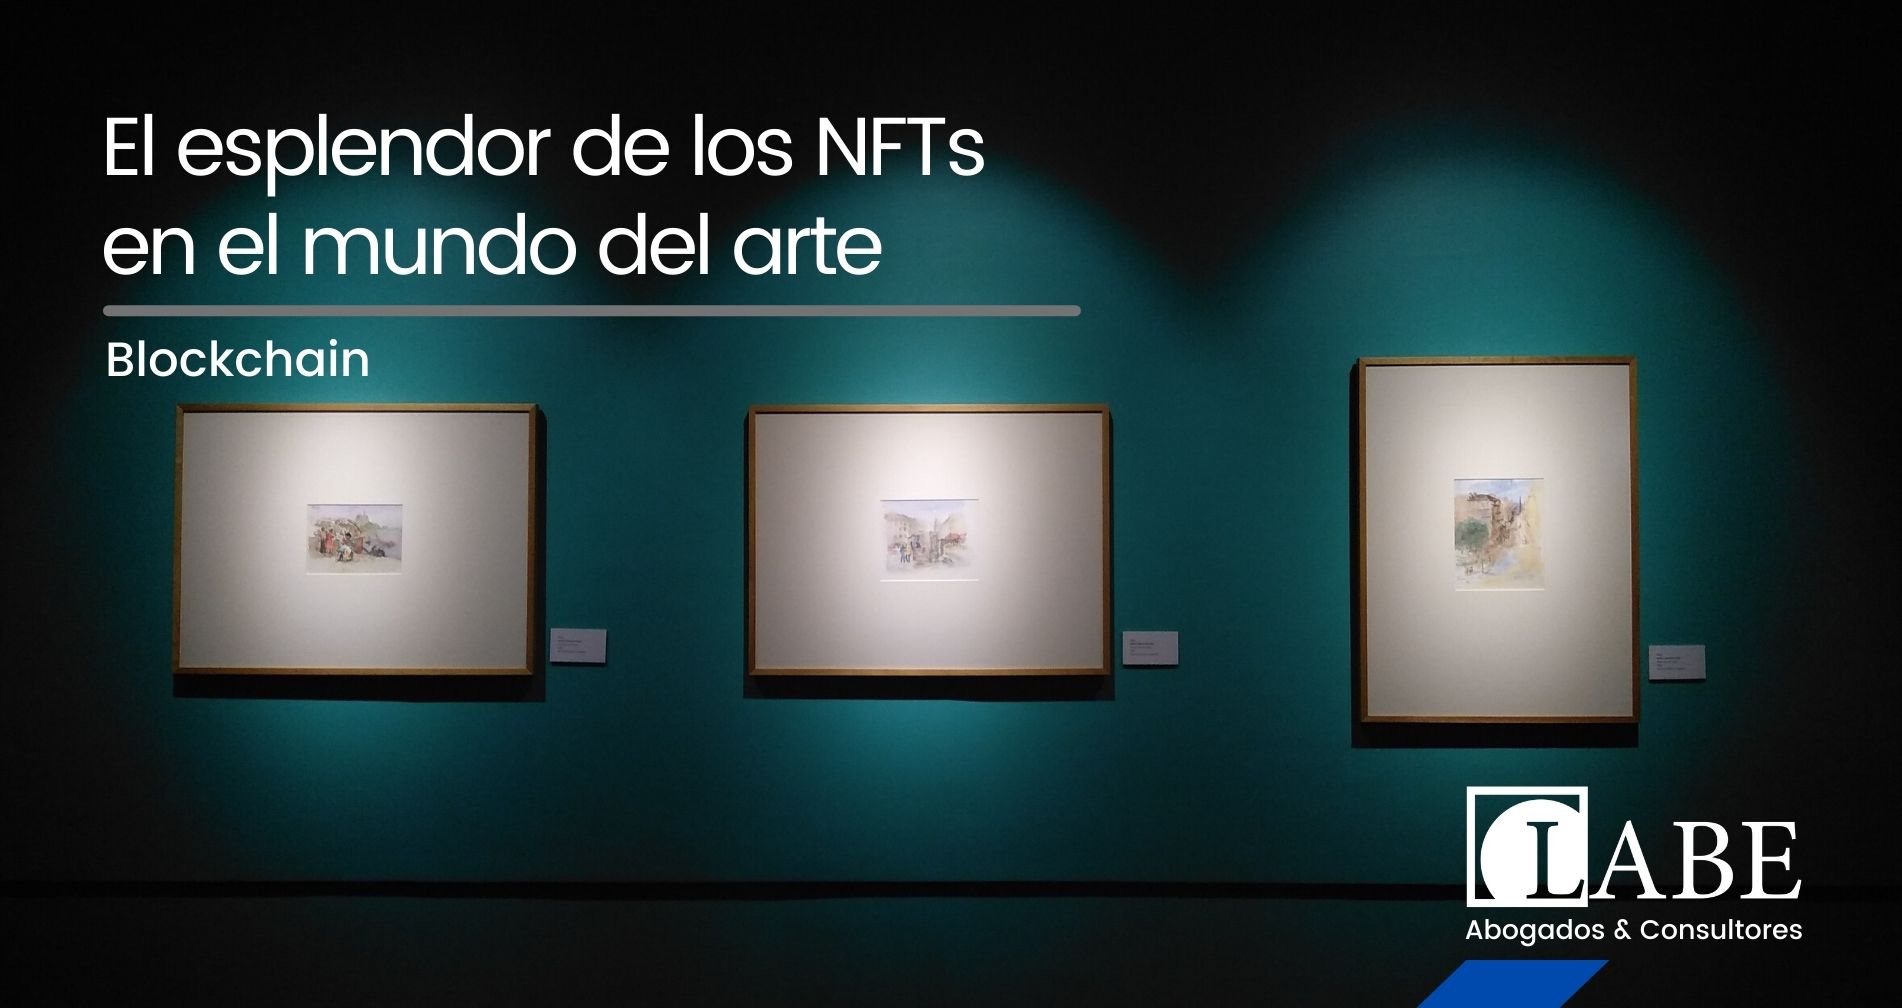 El esplendor de los NFTs en el mundo del arte